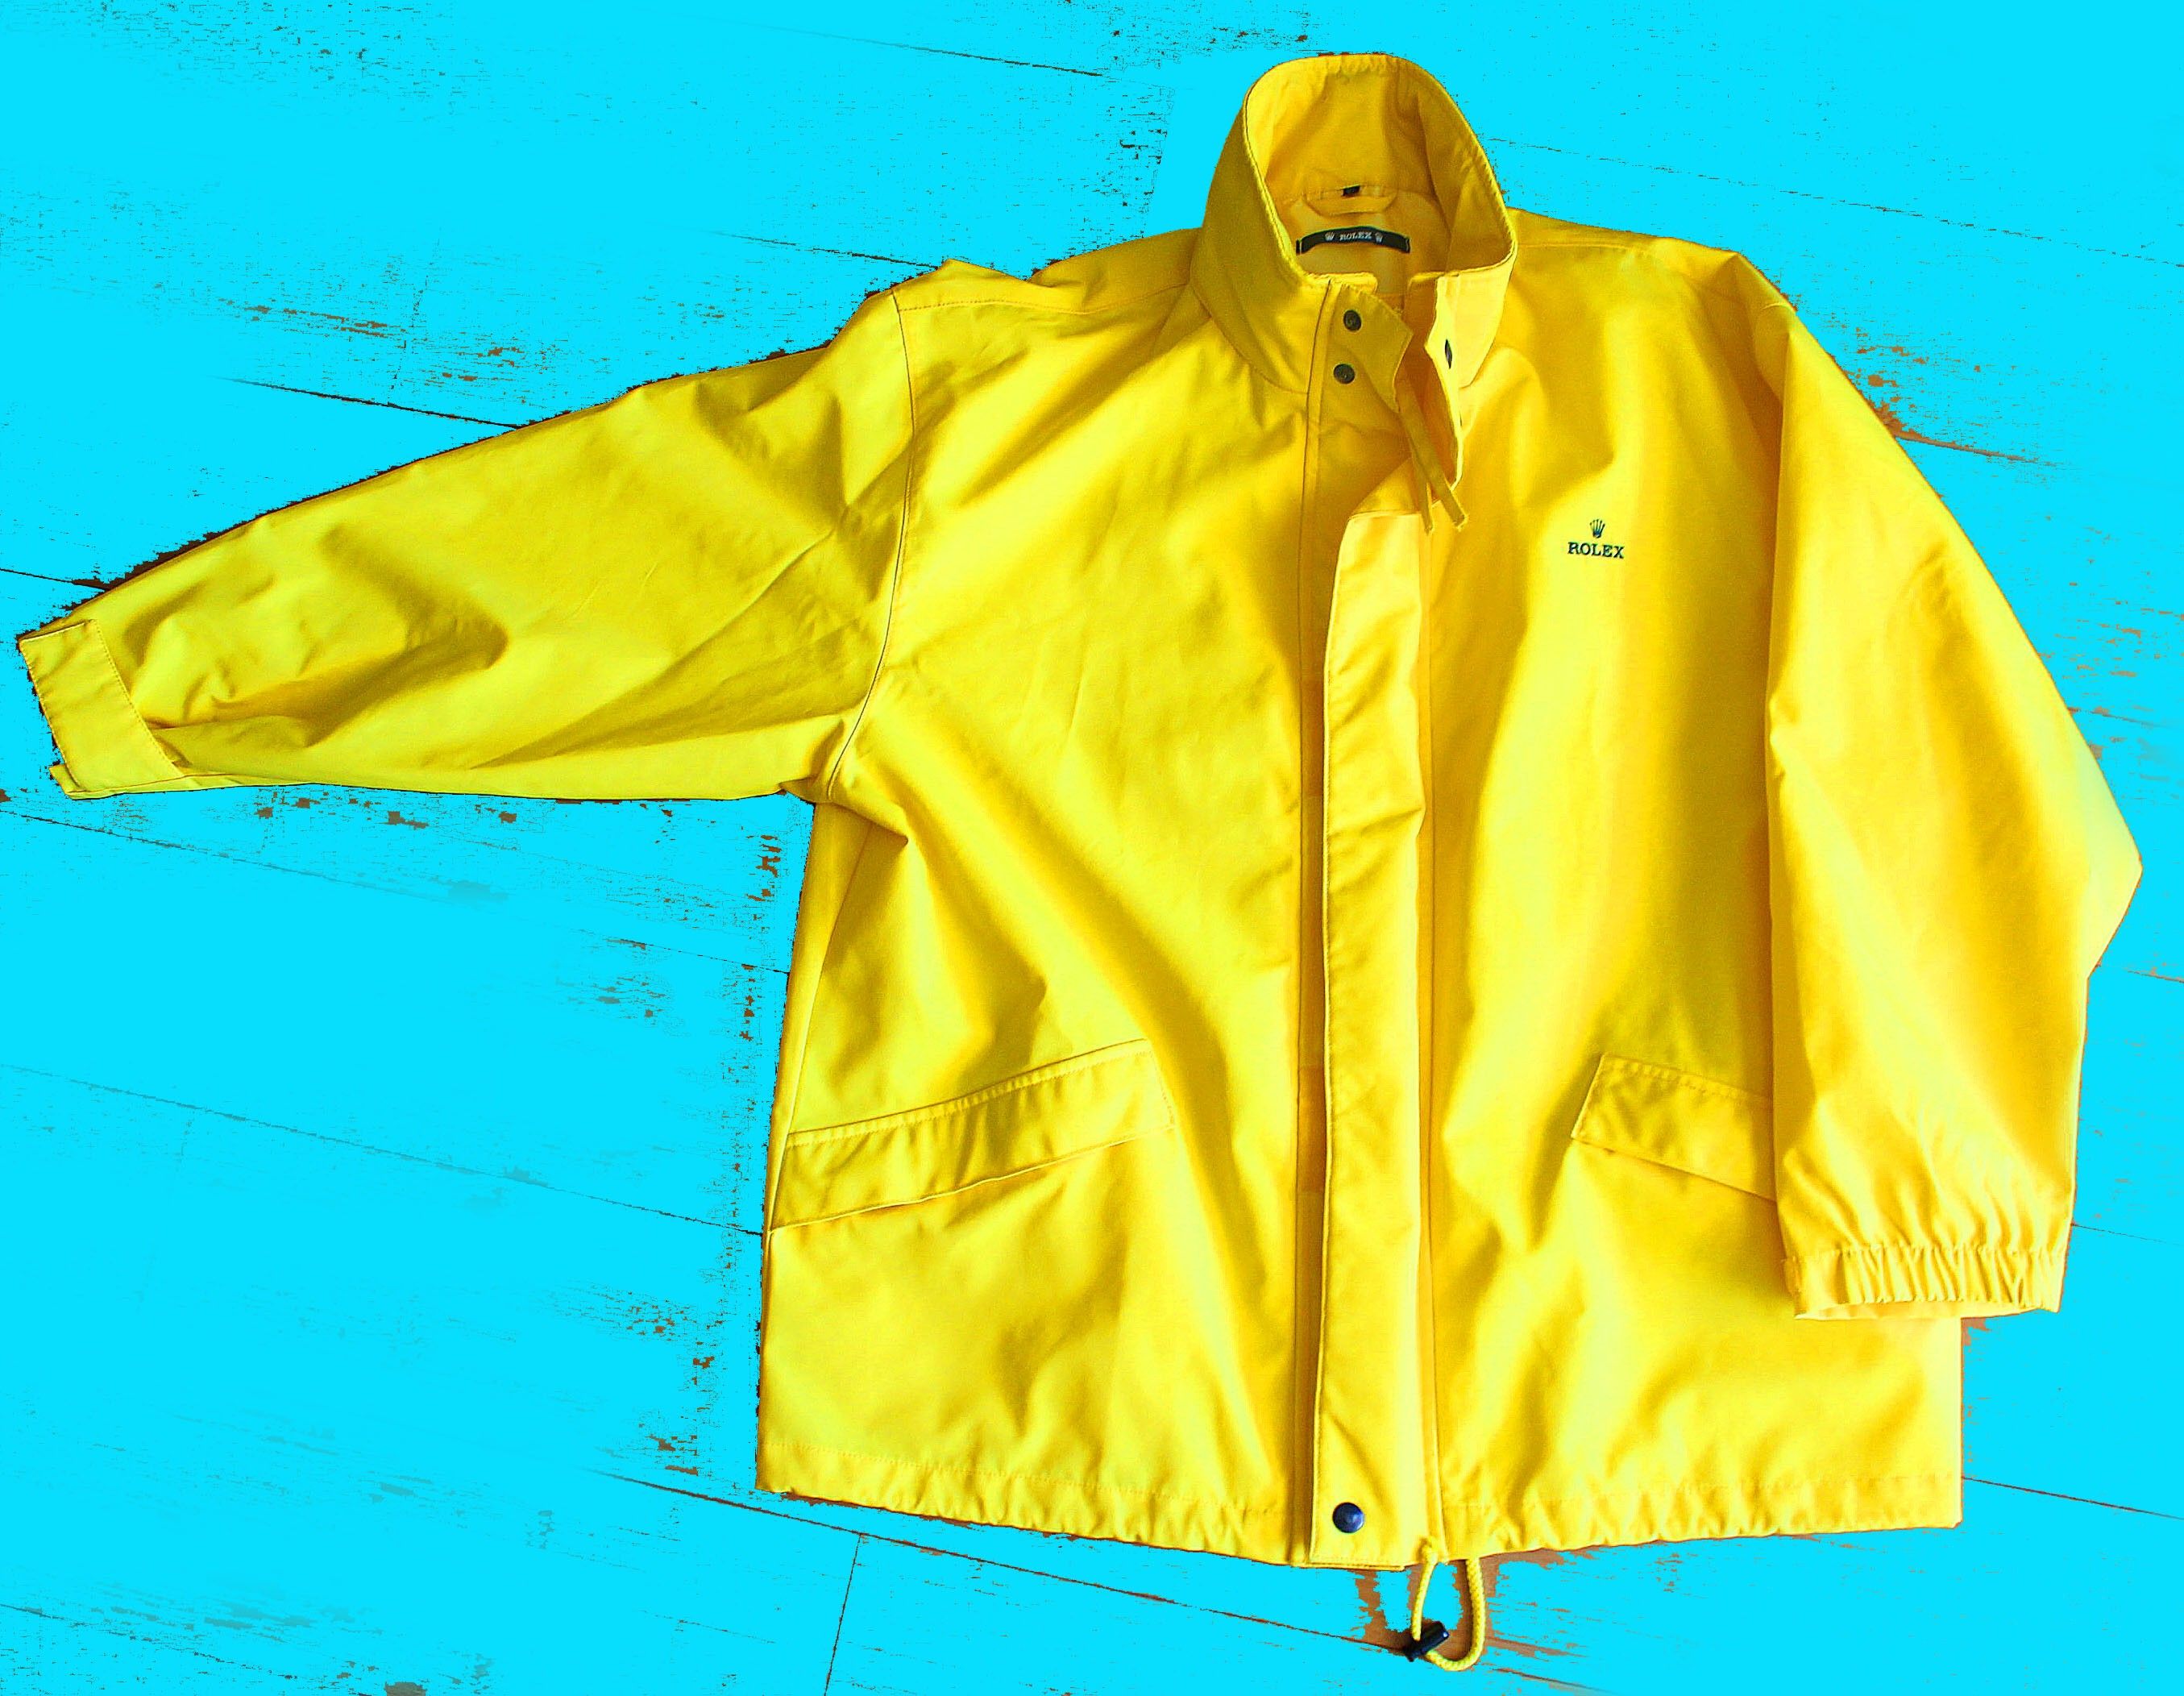 Rolex Rare yellow color Raincoat, parka, XL size clothes